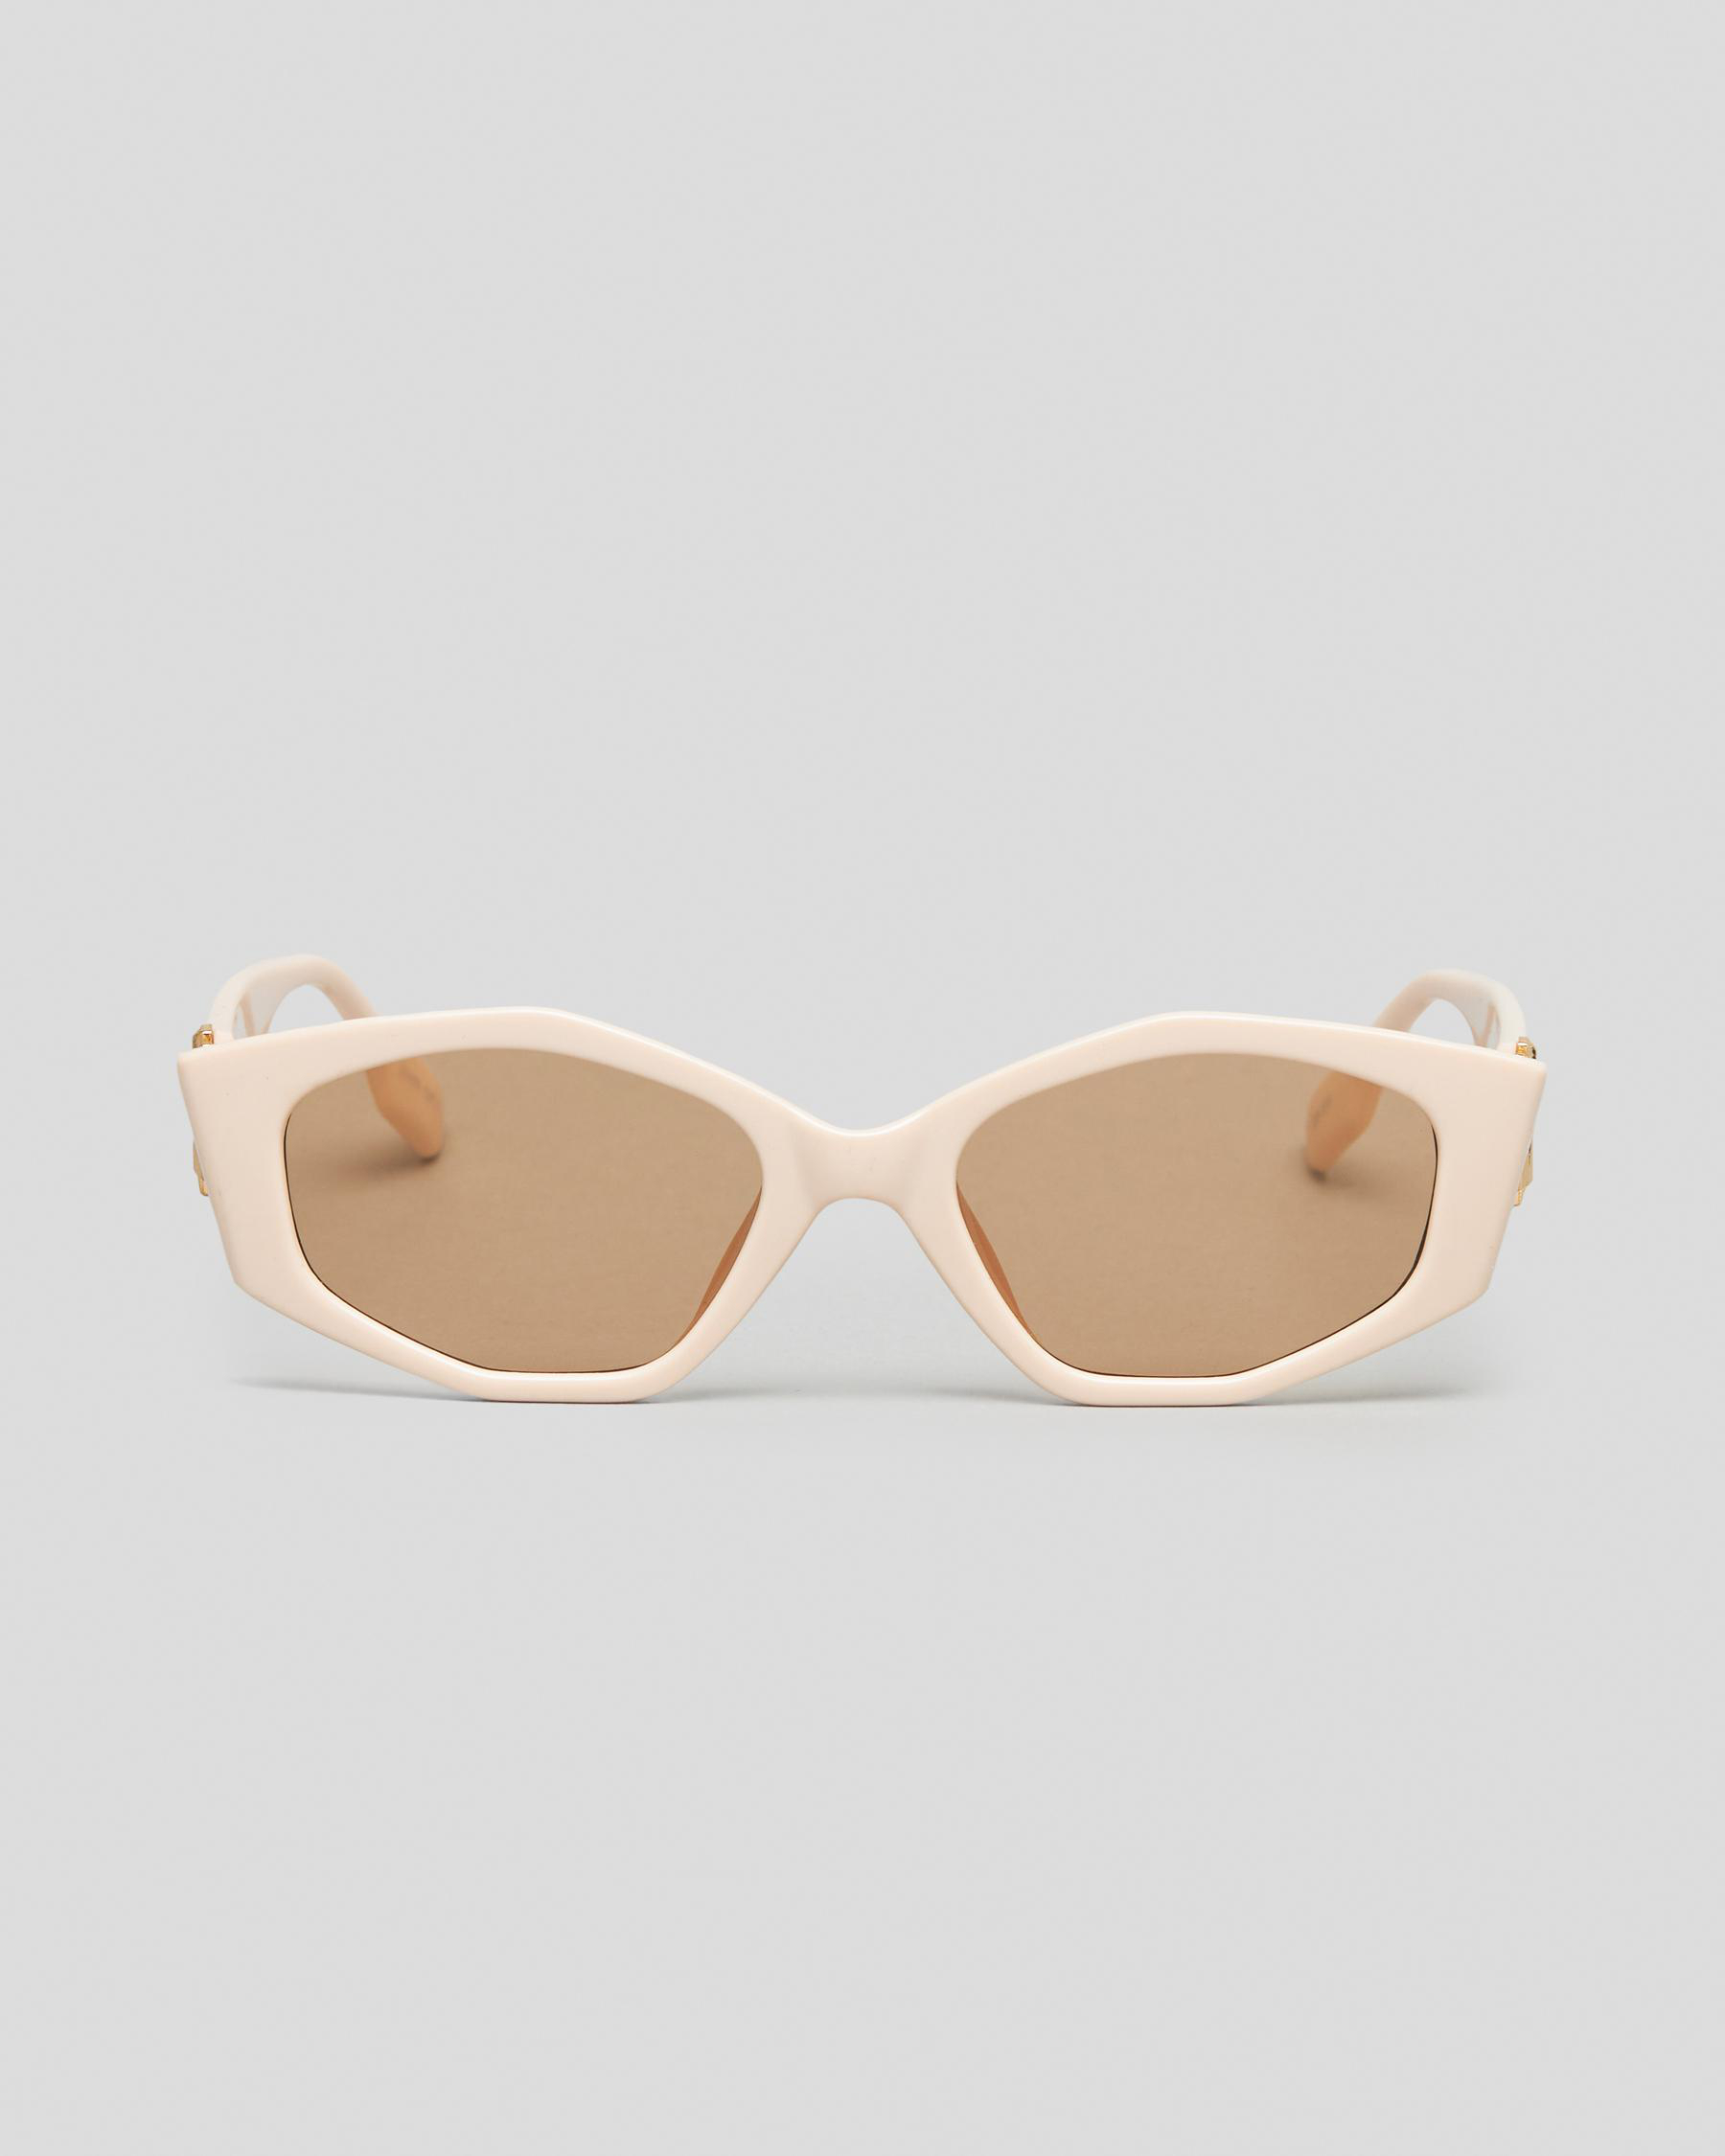 Indie Eyewear Palm Springs Sunglasses In Cream/light Brown - Fast ...